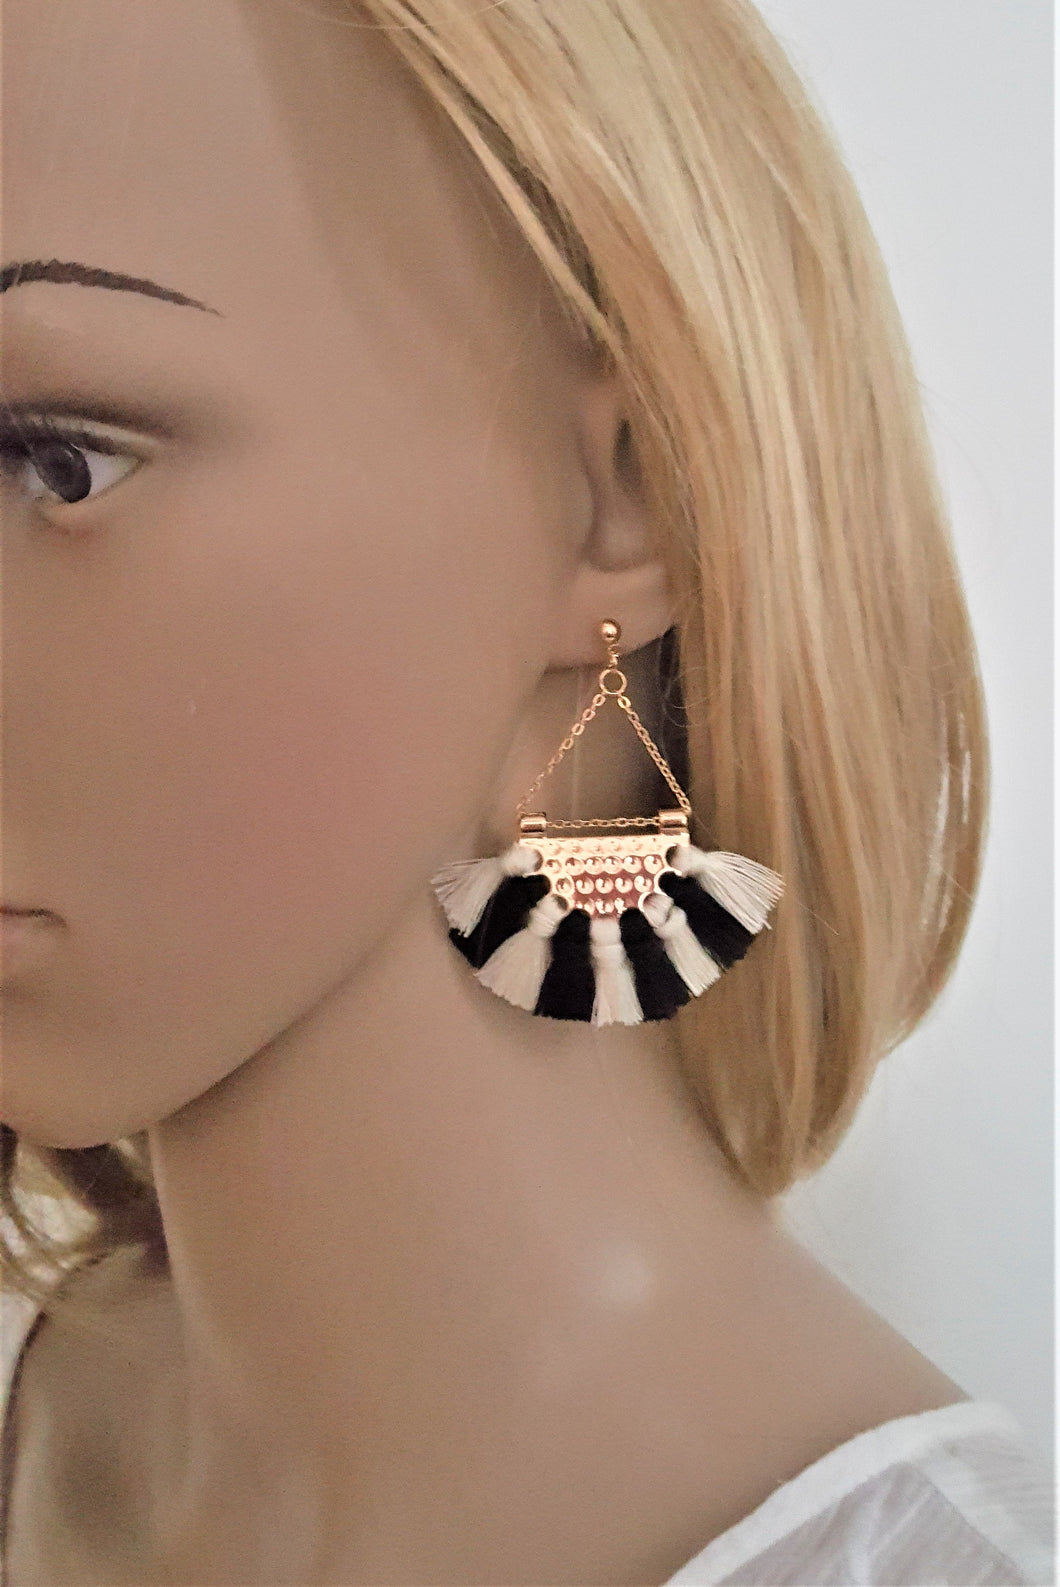 Fan Tassel Earrings Gold tone Chain Triangle Fringe, Geometric Fringe Earring, Bohemian Jewelry, Statement Earring, Ethnic Party wear - Urban Flair USA